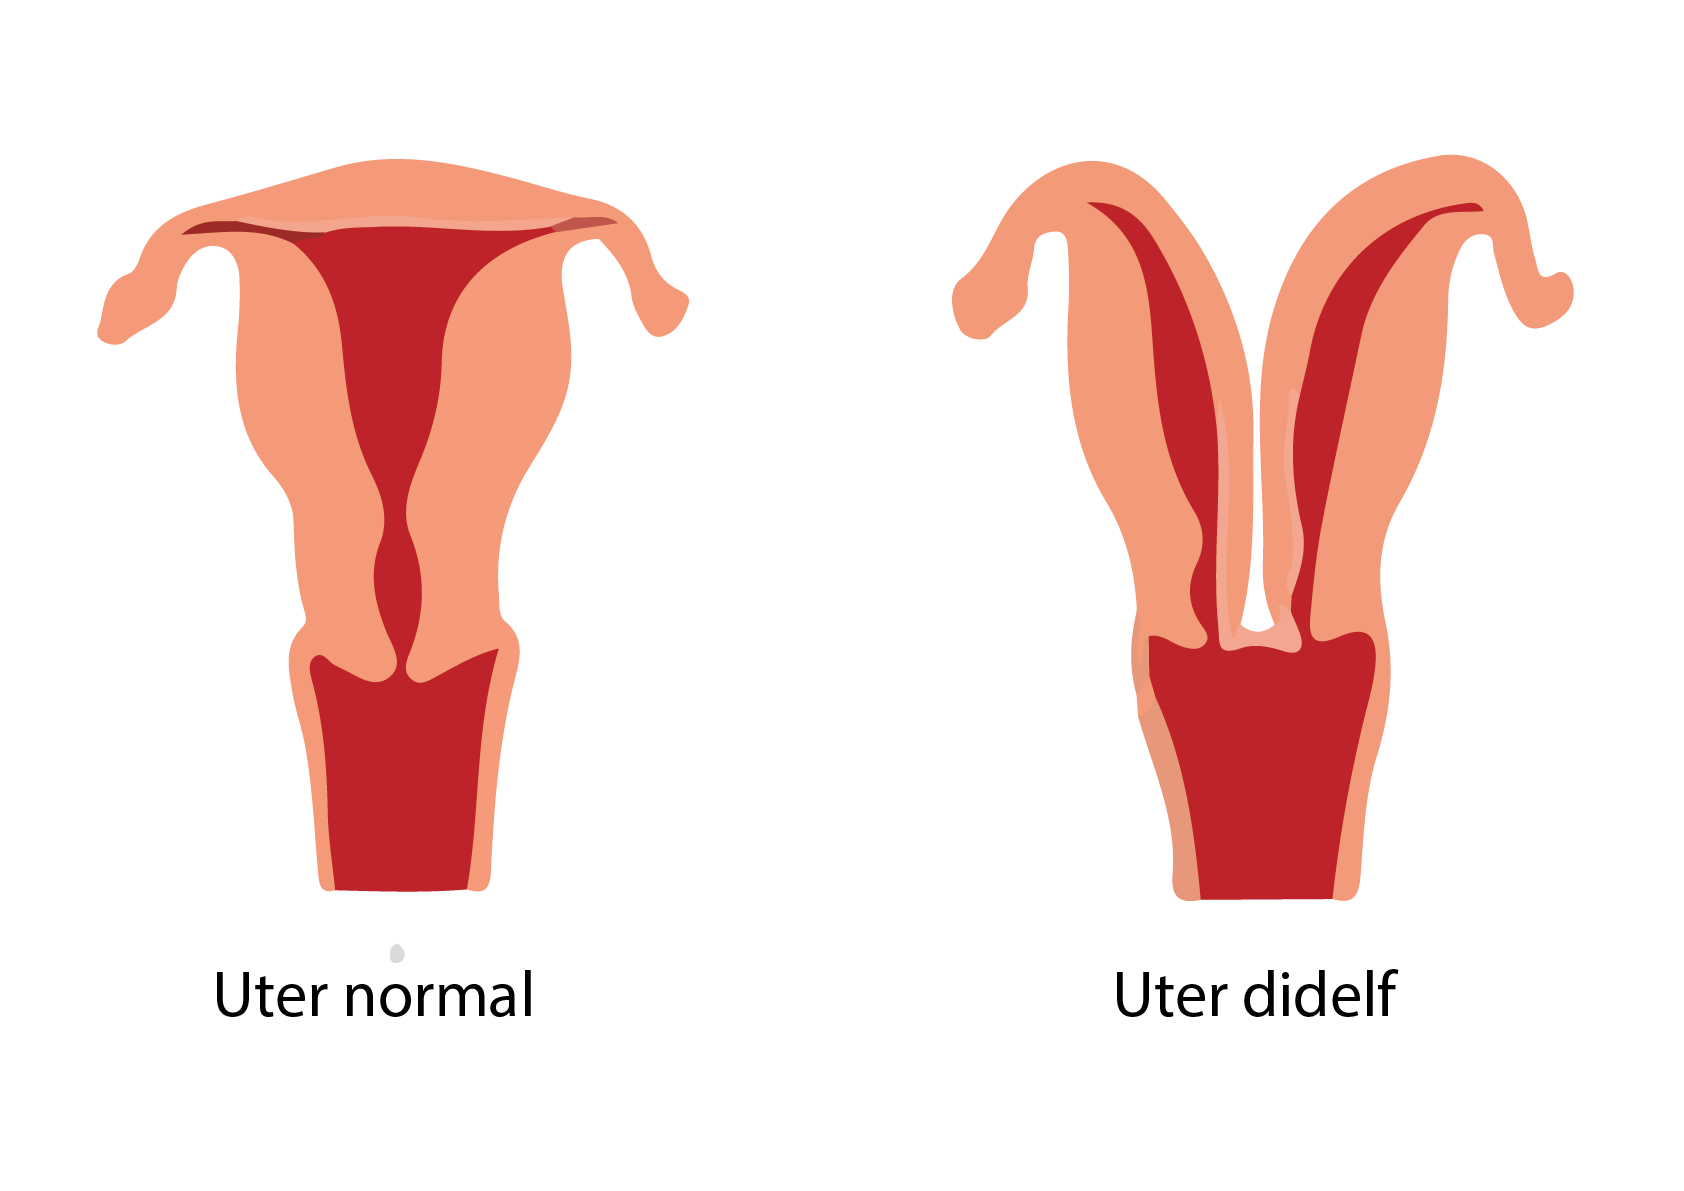 Uter normal vs uter didelf